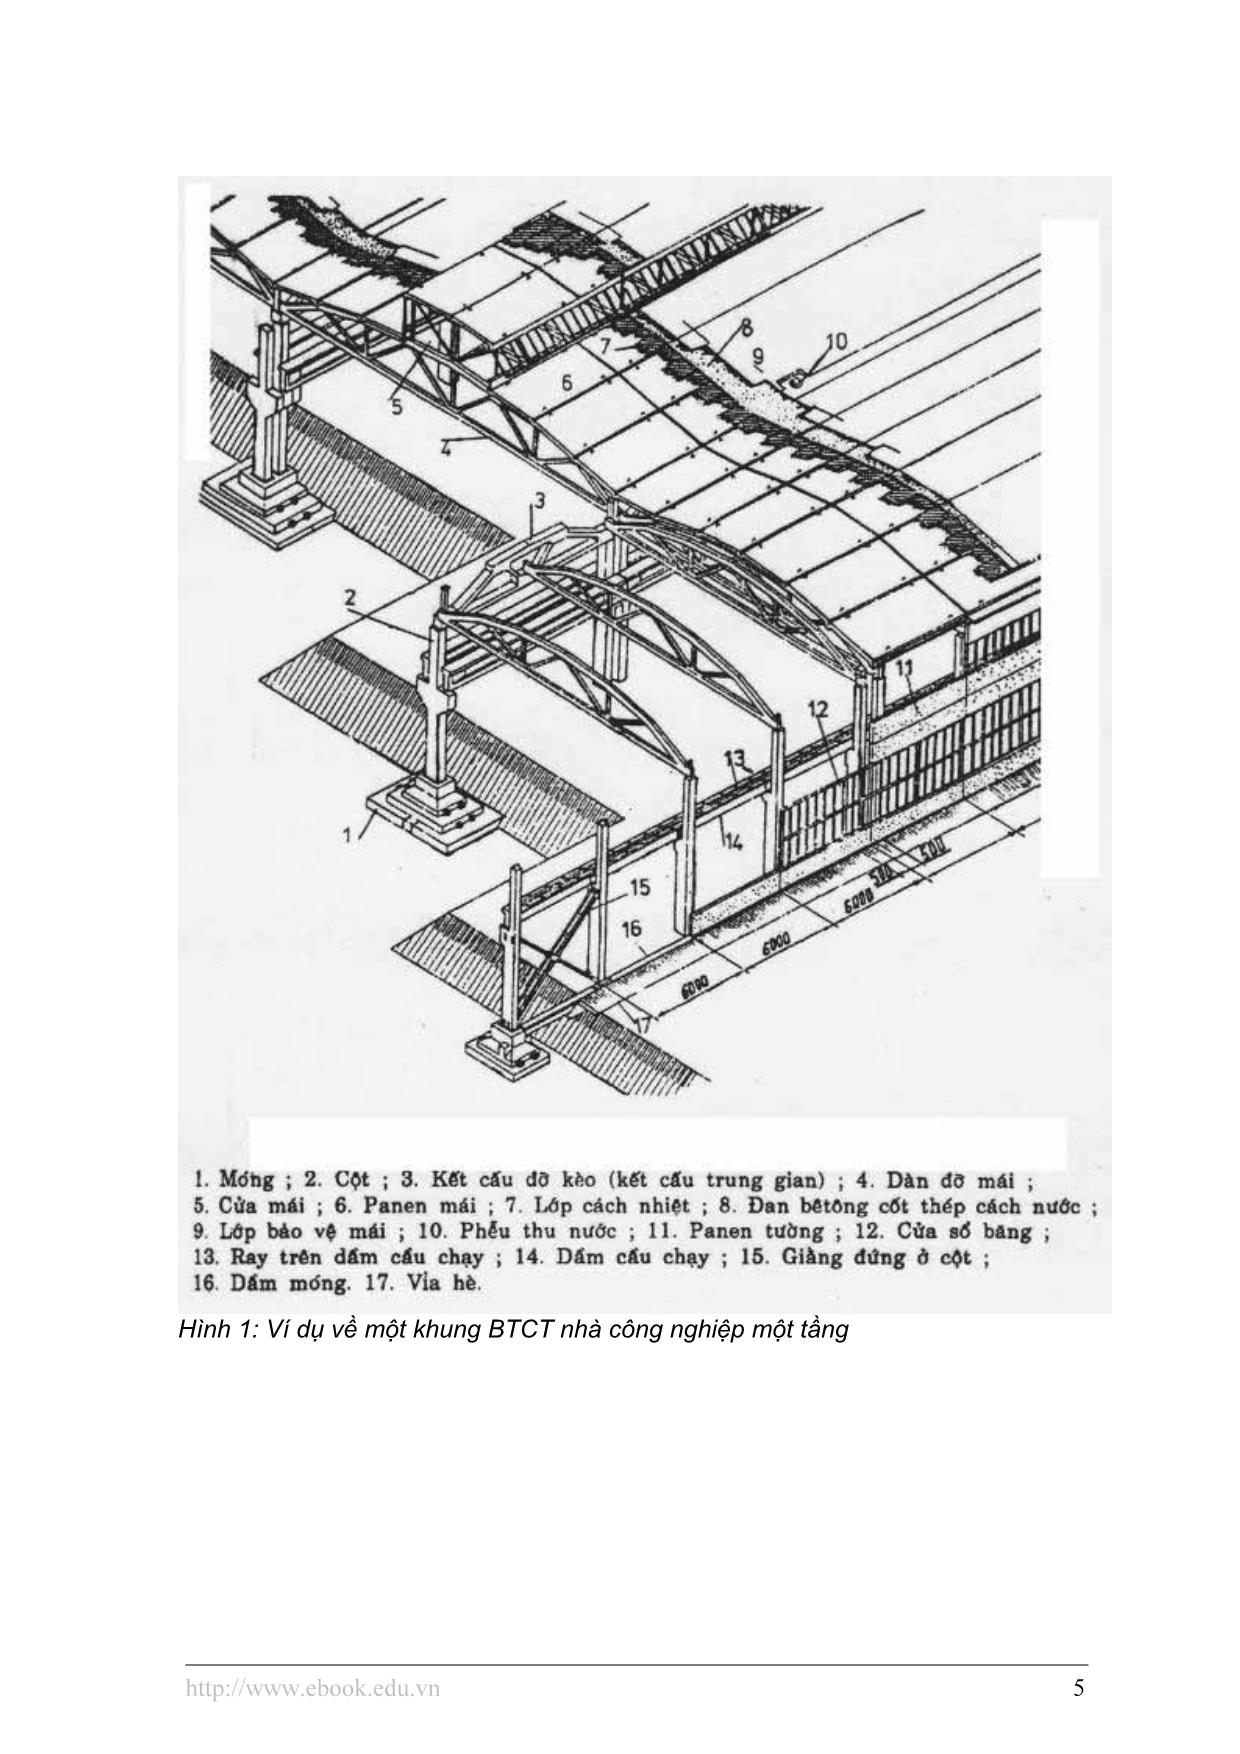 Những vấn đề chung thiết kế cấu tạo kiến trúc nhà công nghiệp – thiết kế cấu tạo kiến trúc kết cấu chịu lực trang 5